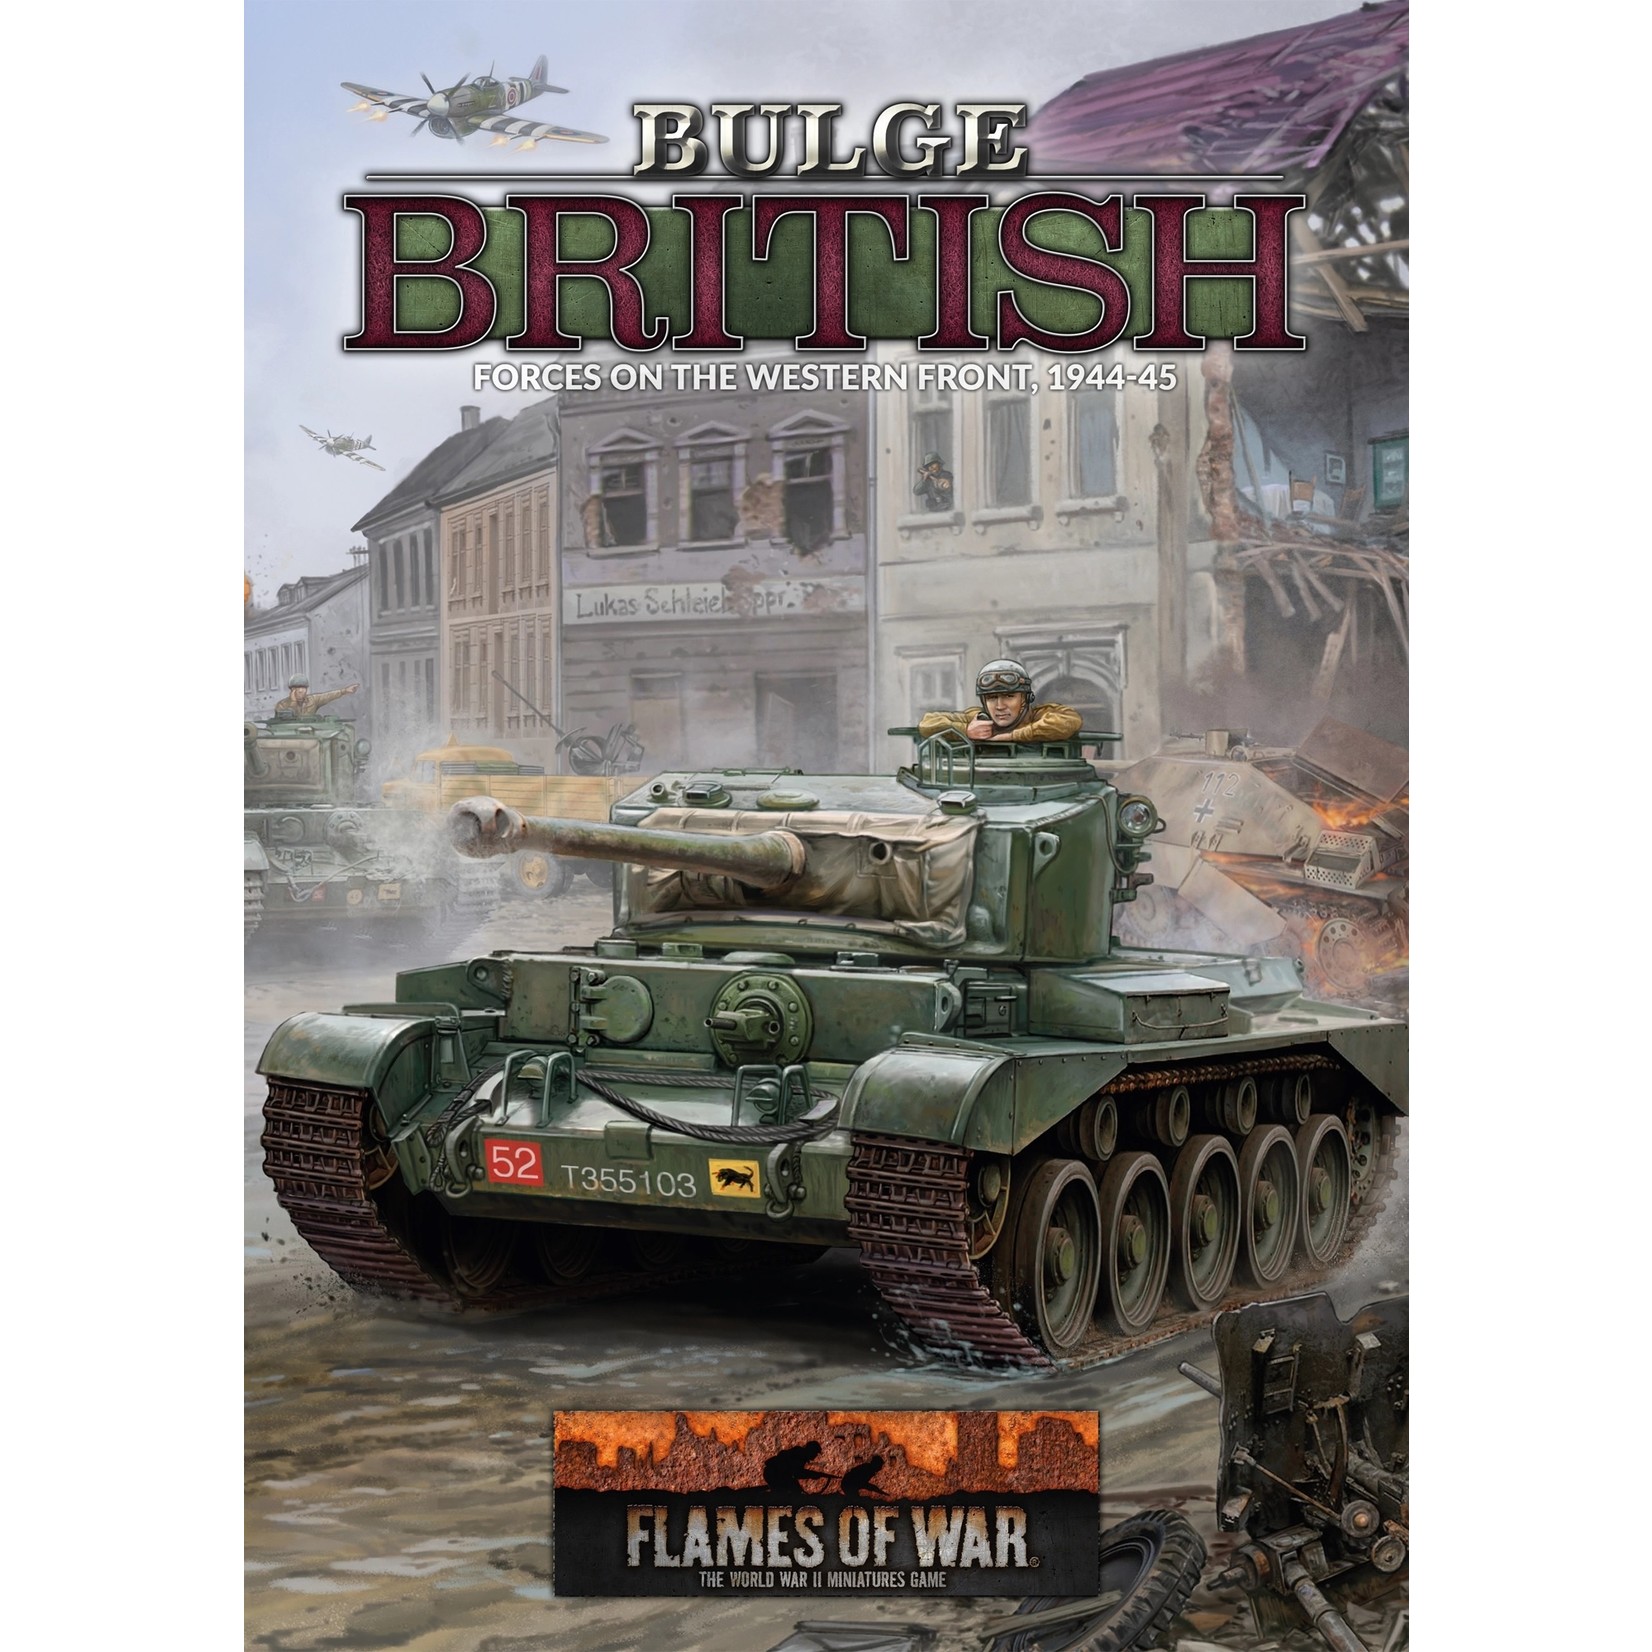 Flames of War Flames of War: Bulge British Rulebook